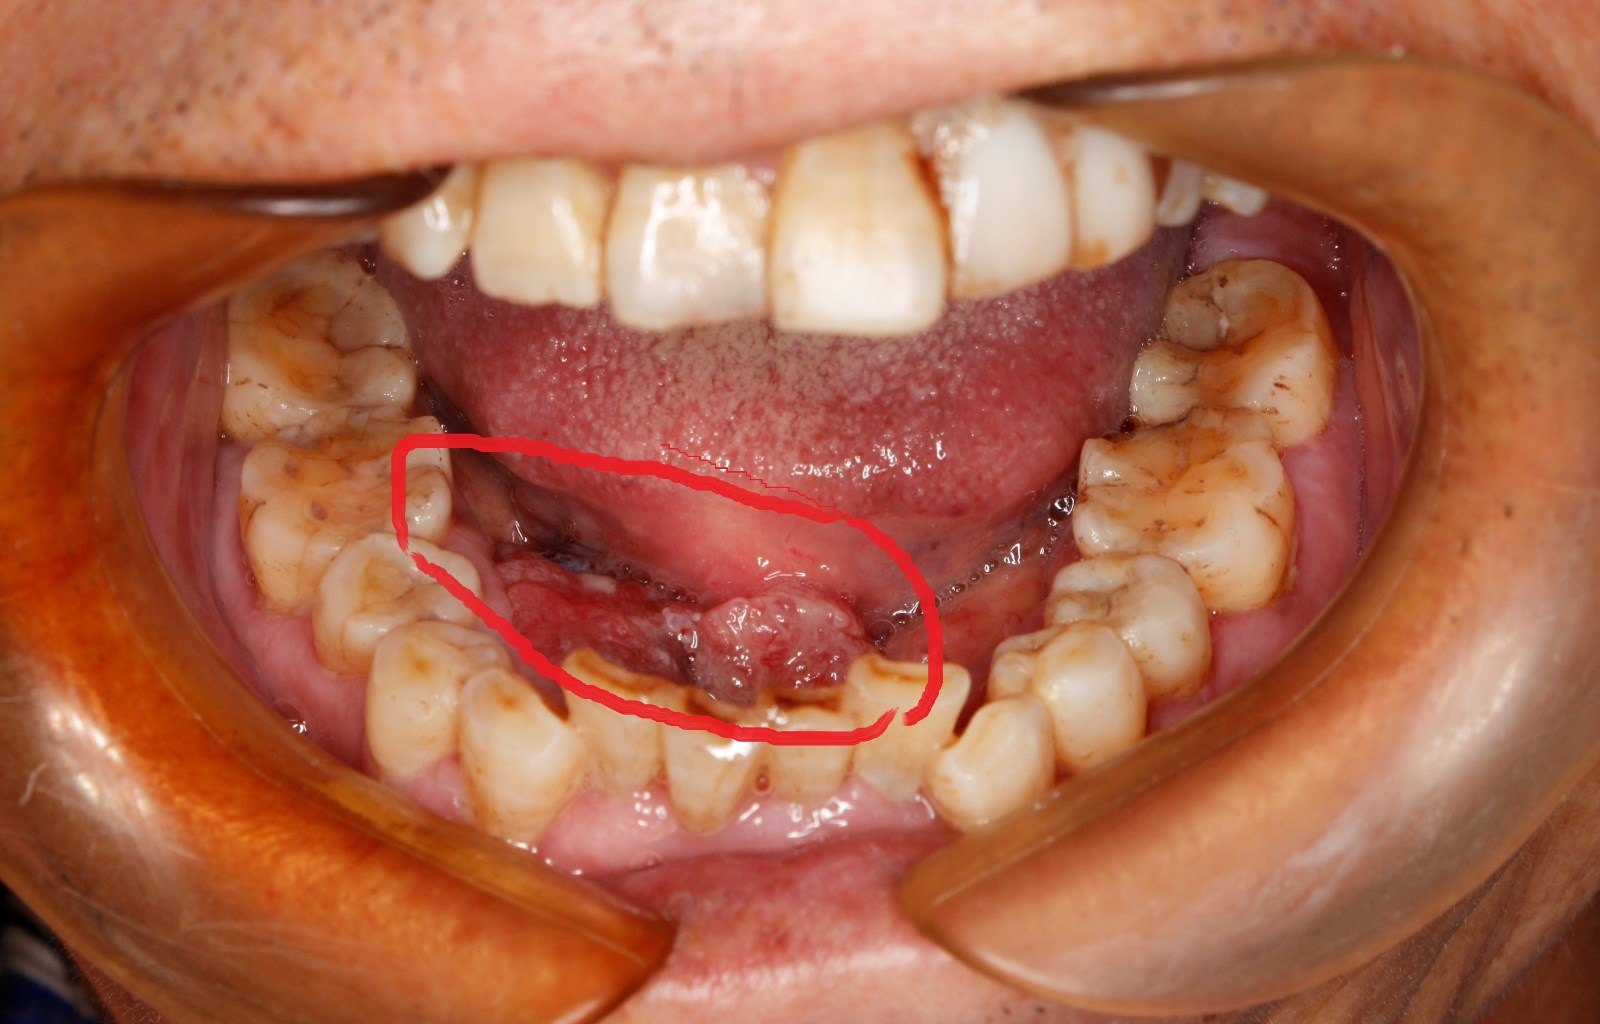 口腔粘液性肿瘤图片图片